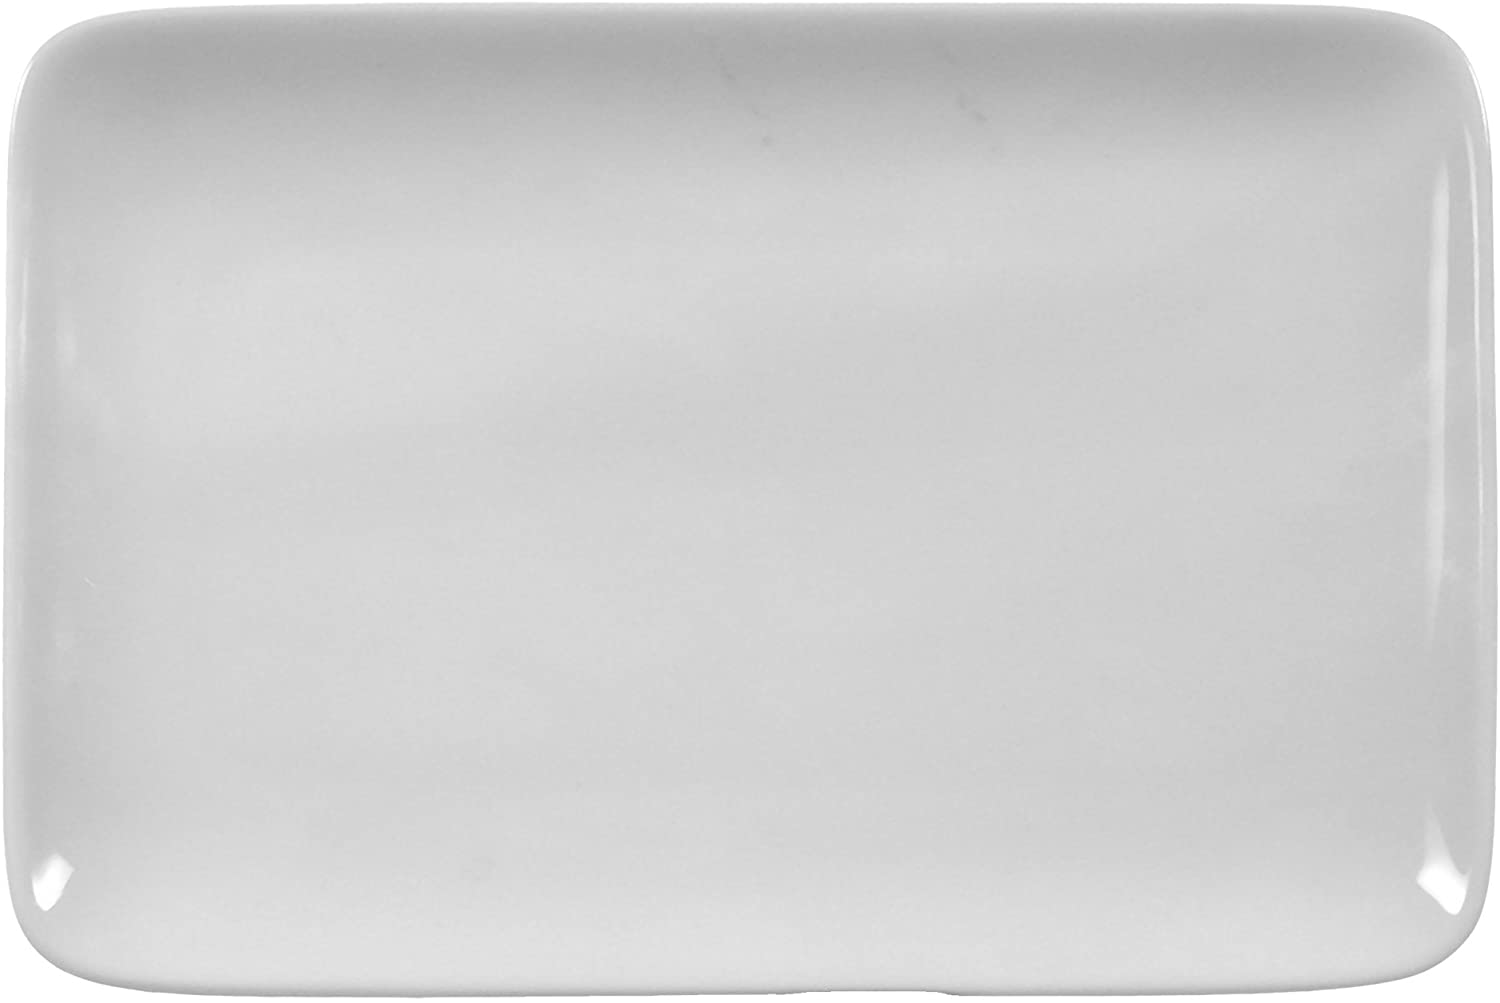 Butter Plate 17.6 cm Compact White Universal Collar by Seltmann Weiden